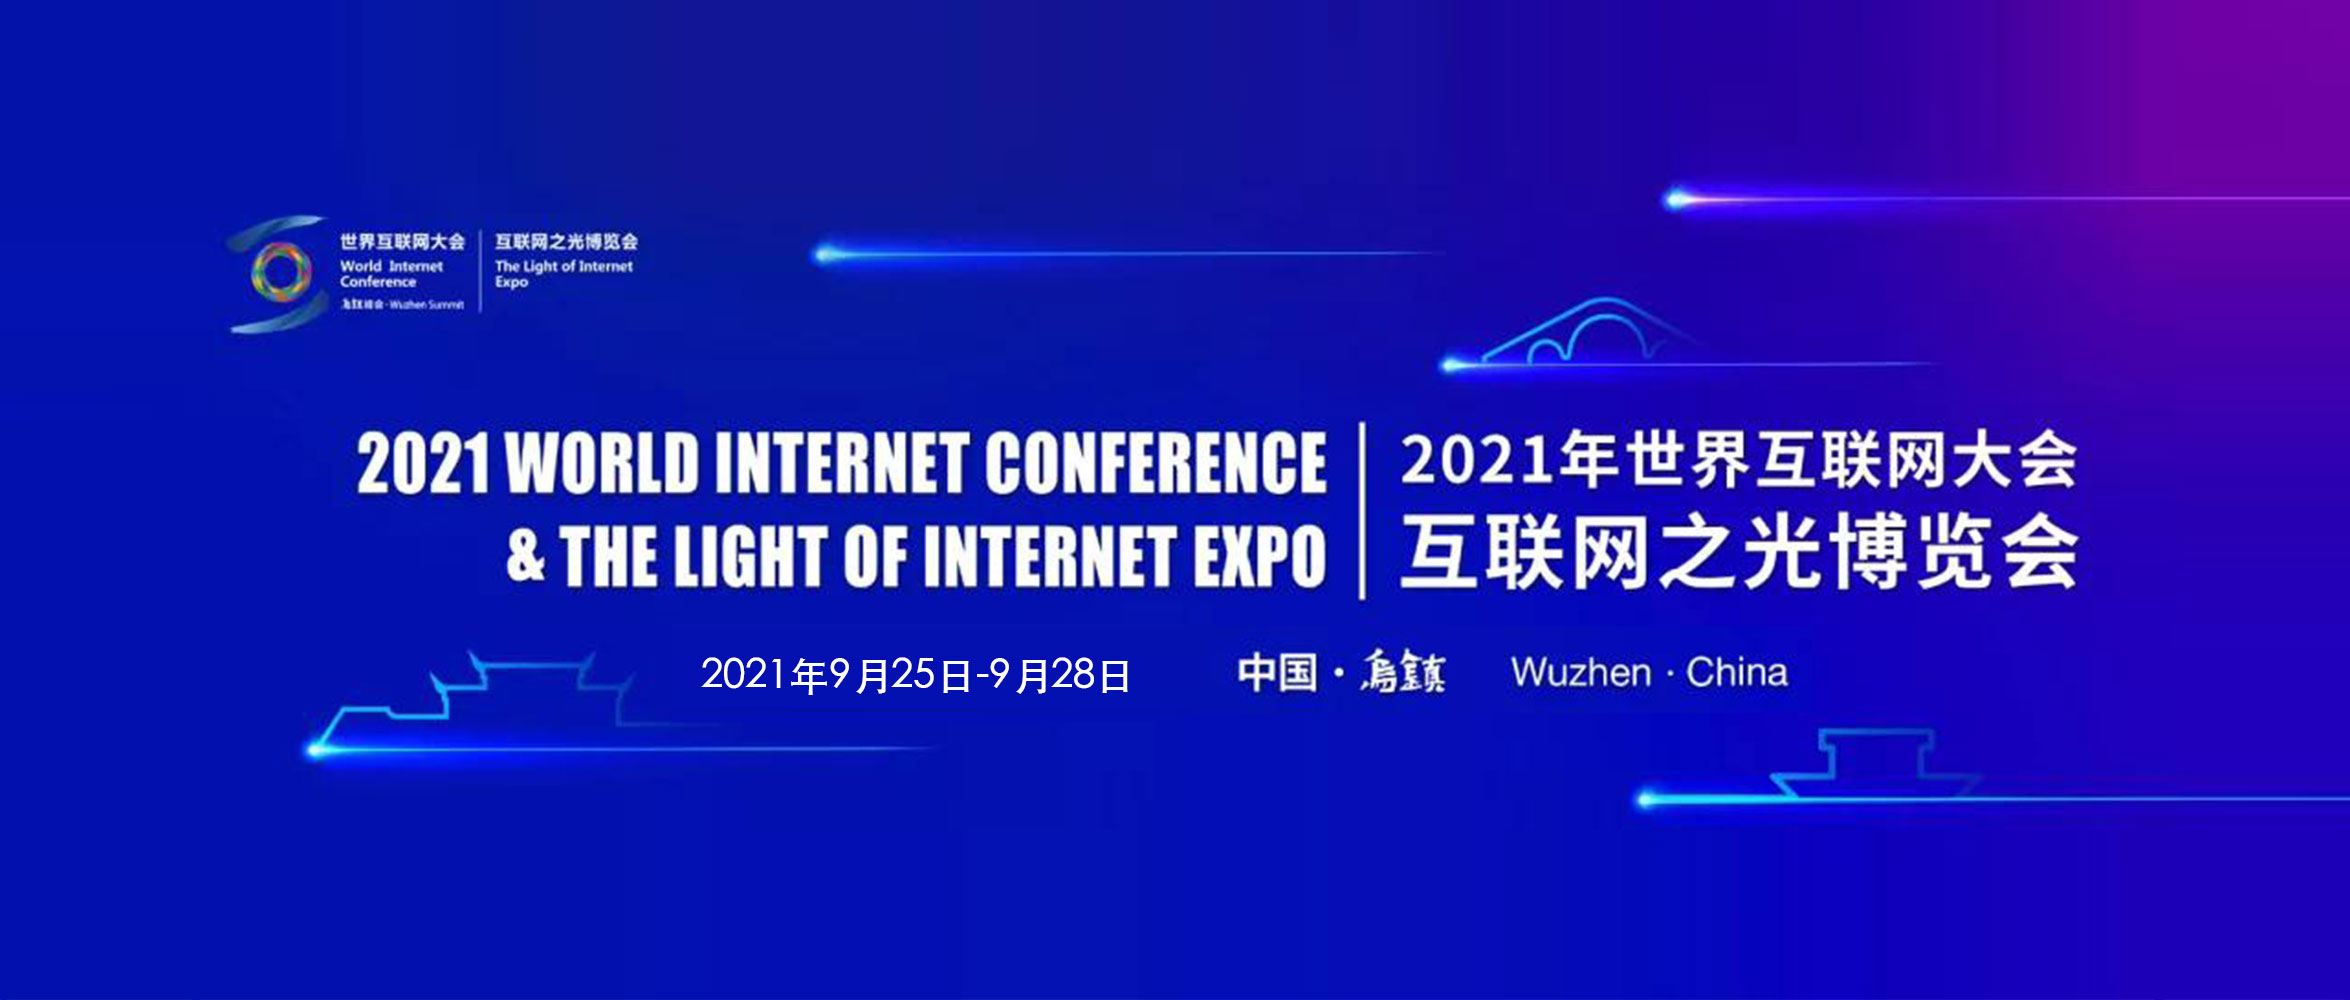 天威诚信将亮相2021世界互联网大会“互联网之光”博览会-1